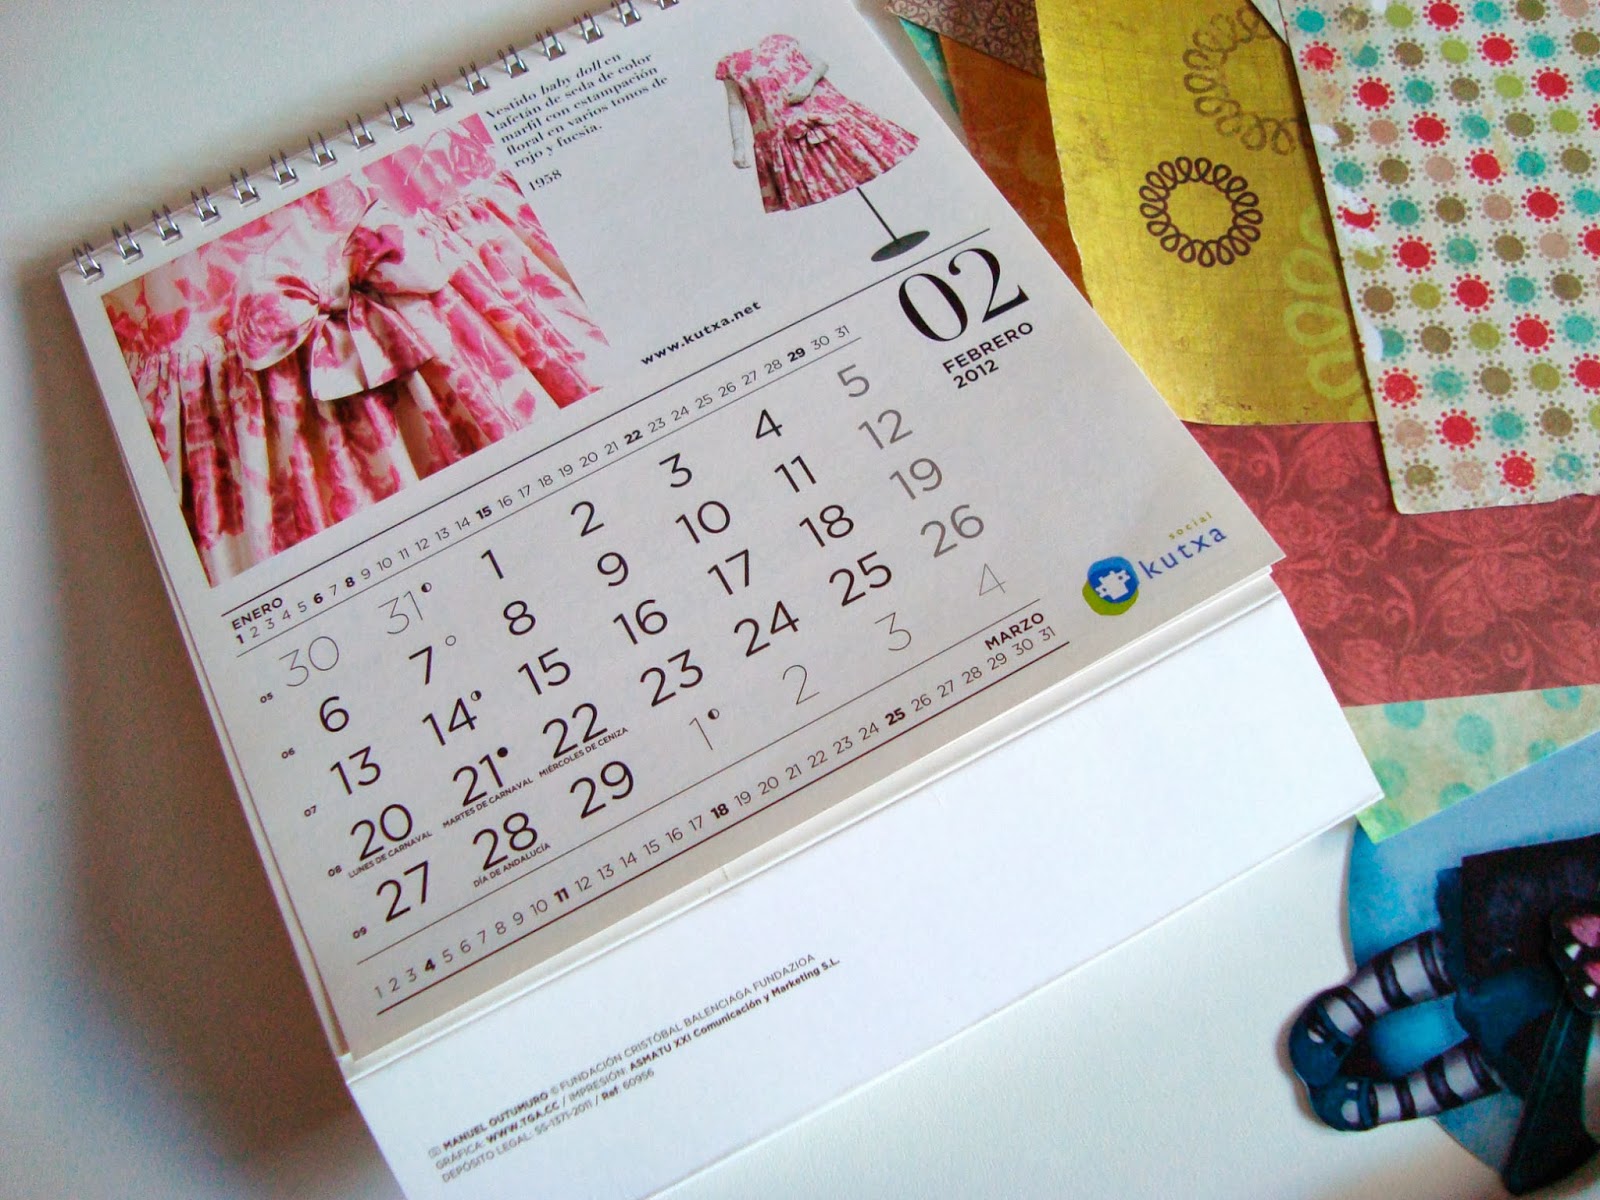 Calendario_gorjuss_materiales